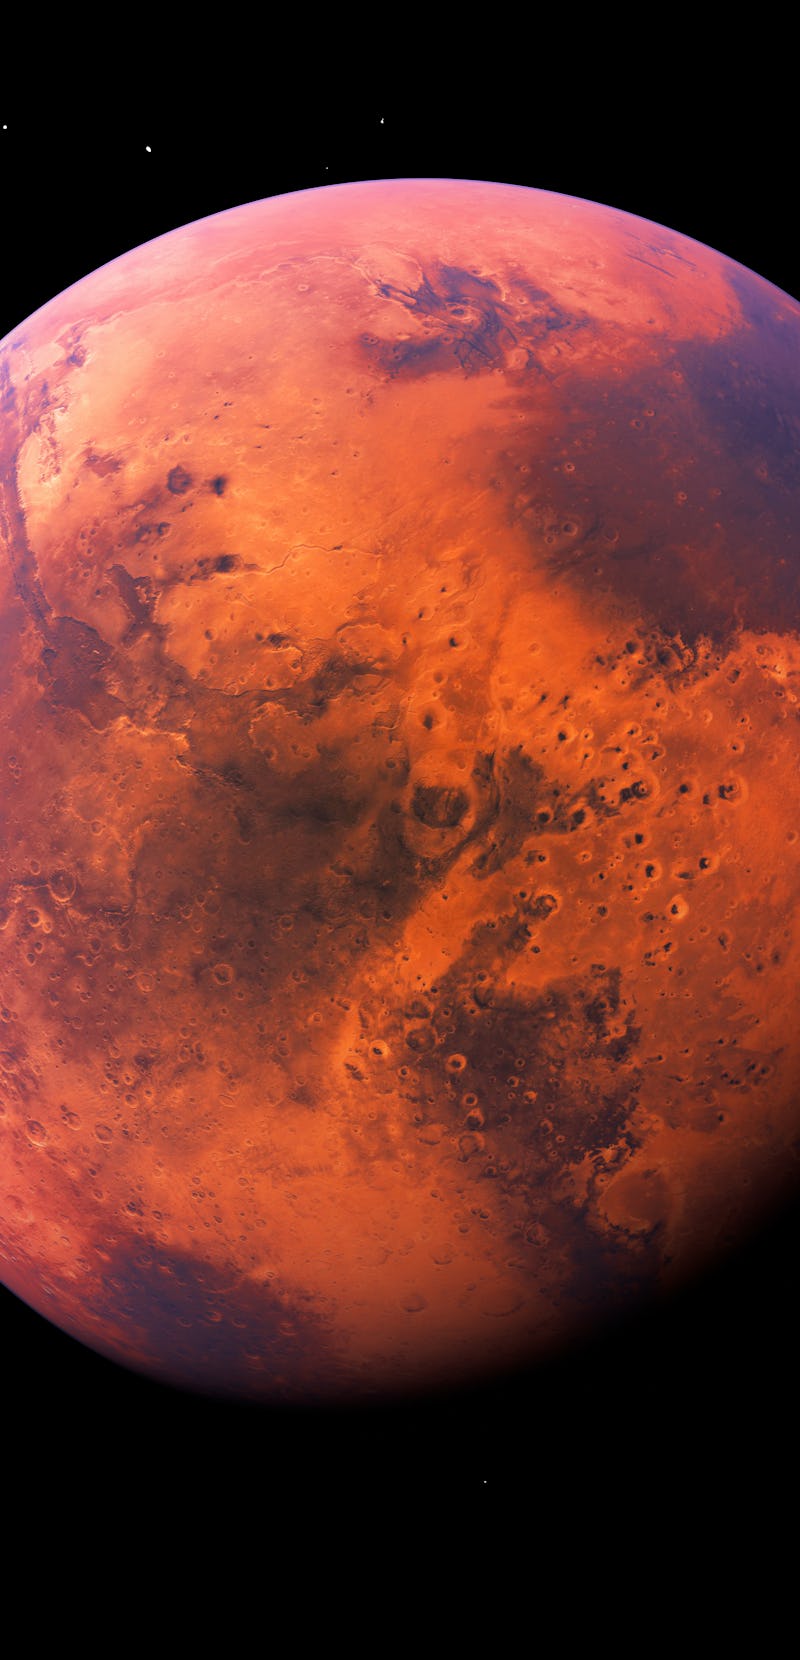 Mars planet 3d rendering black background super high resolution science illustration